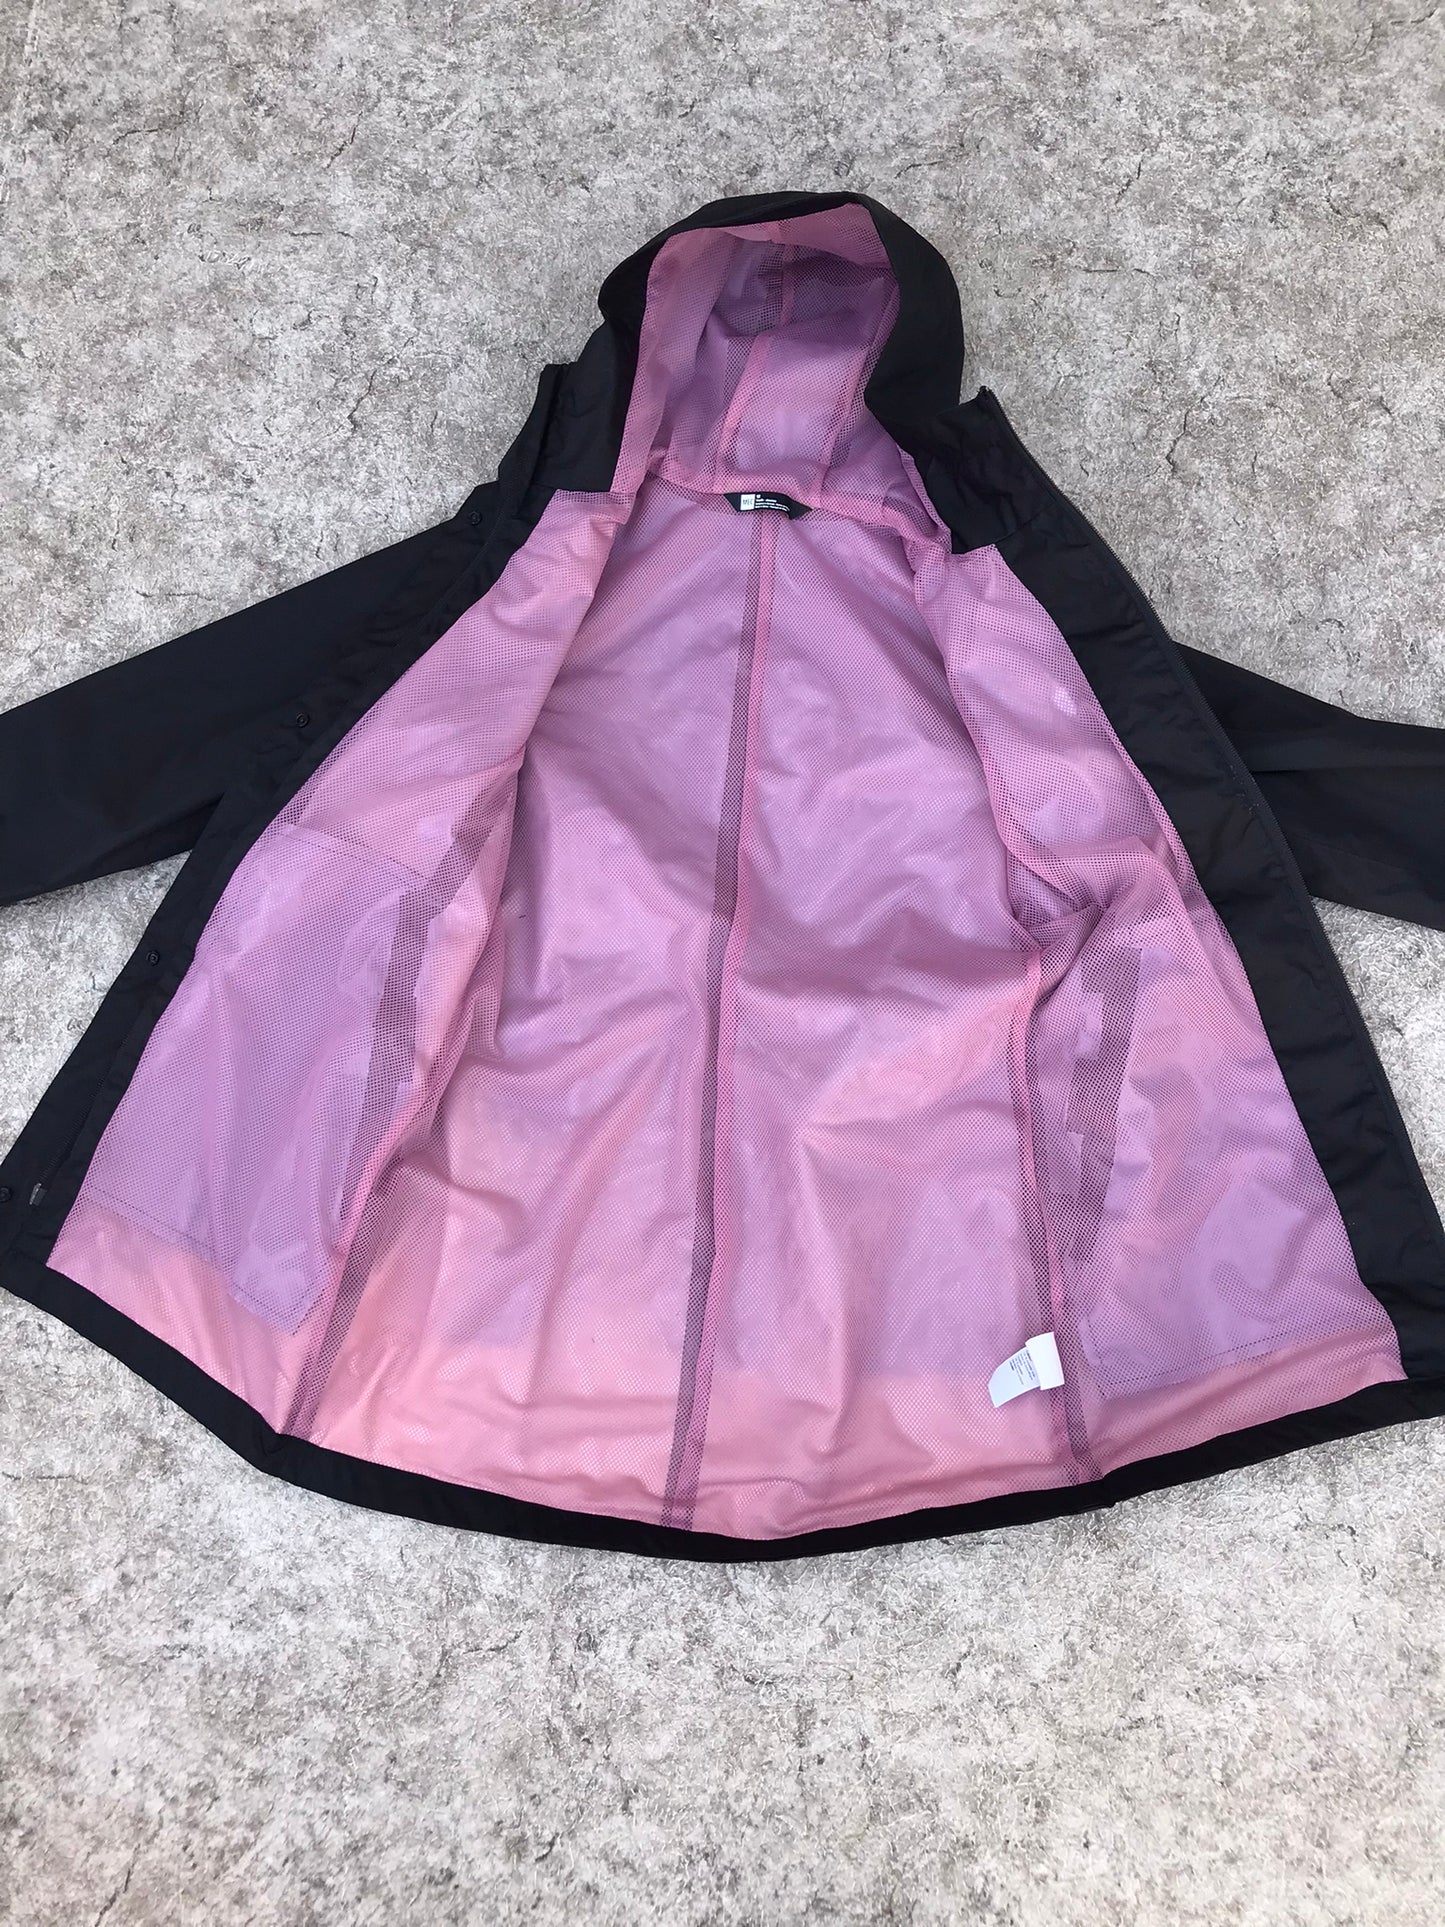 Rain Coat Child Size 14 MEC Youth Black Pink Long Excellent